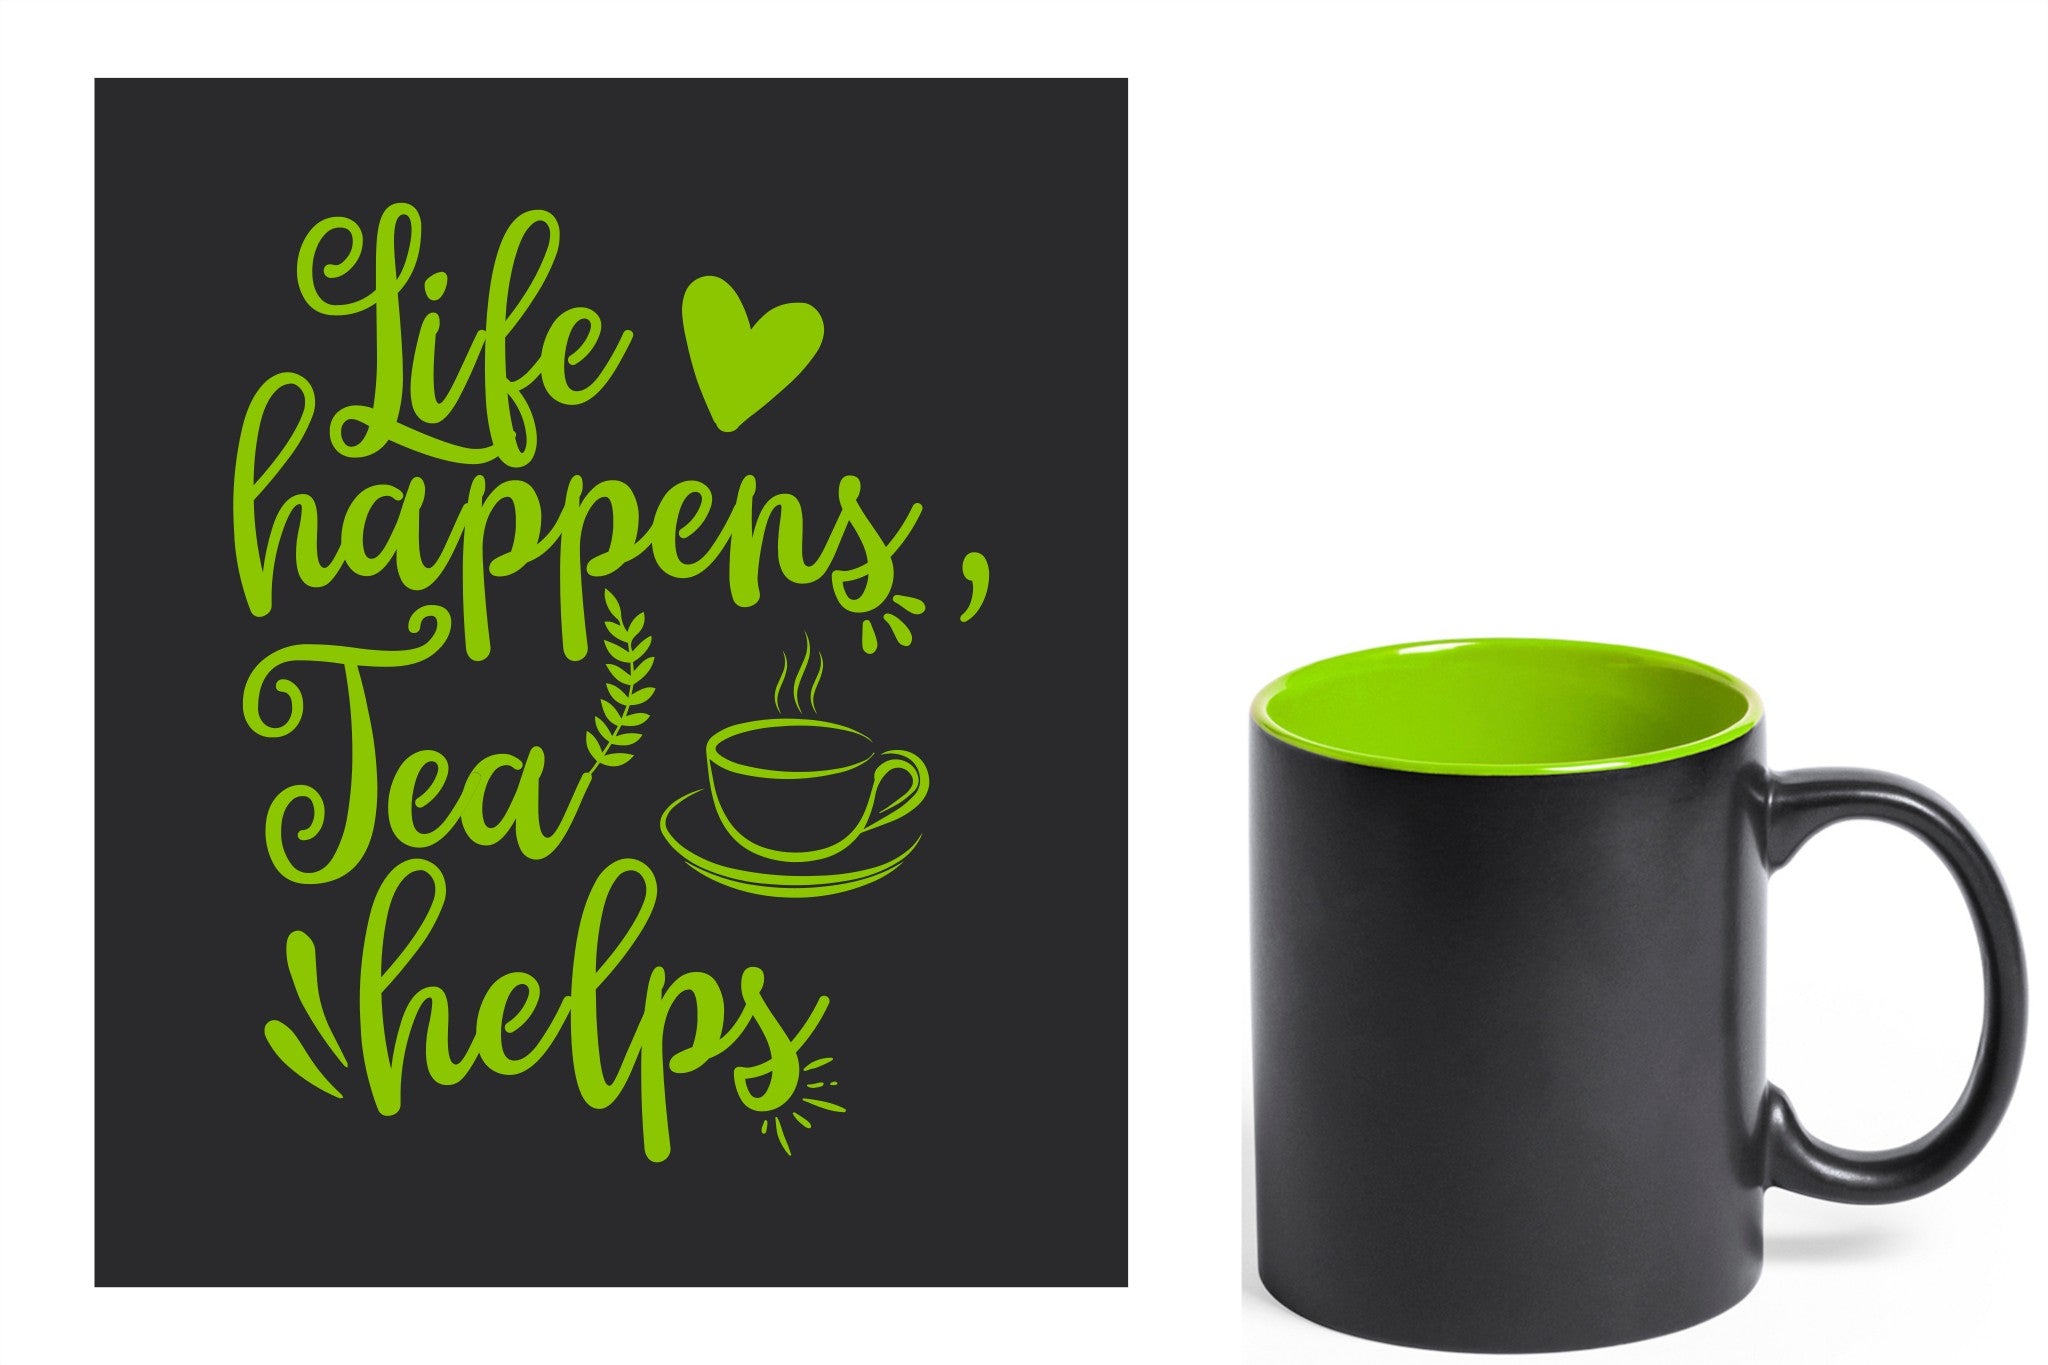 zwarte keramische mok met groene gravure  'Life happens tea helps'.